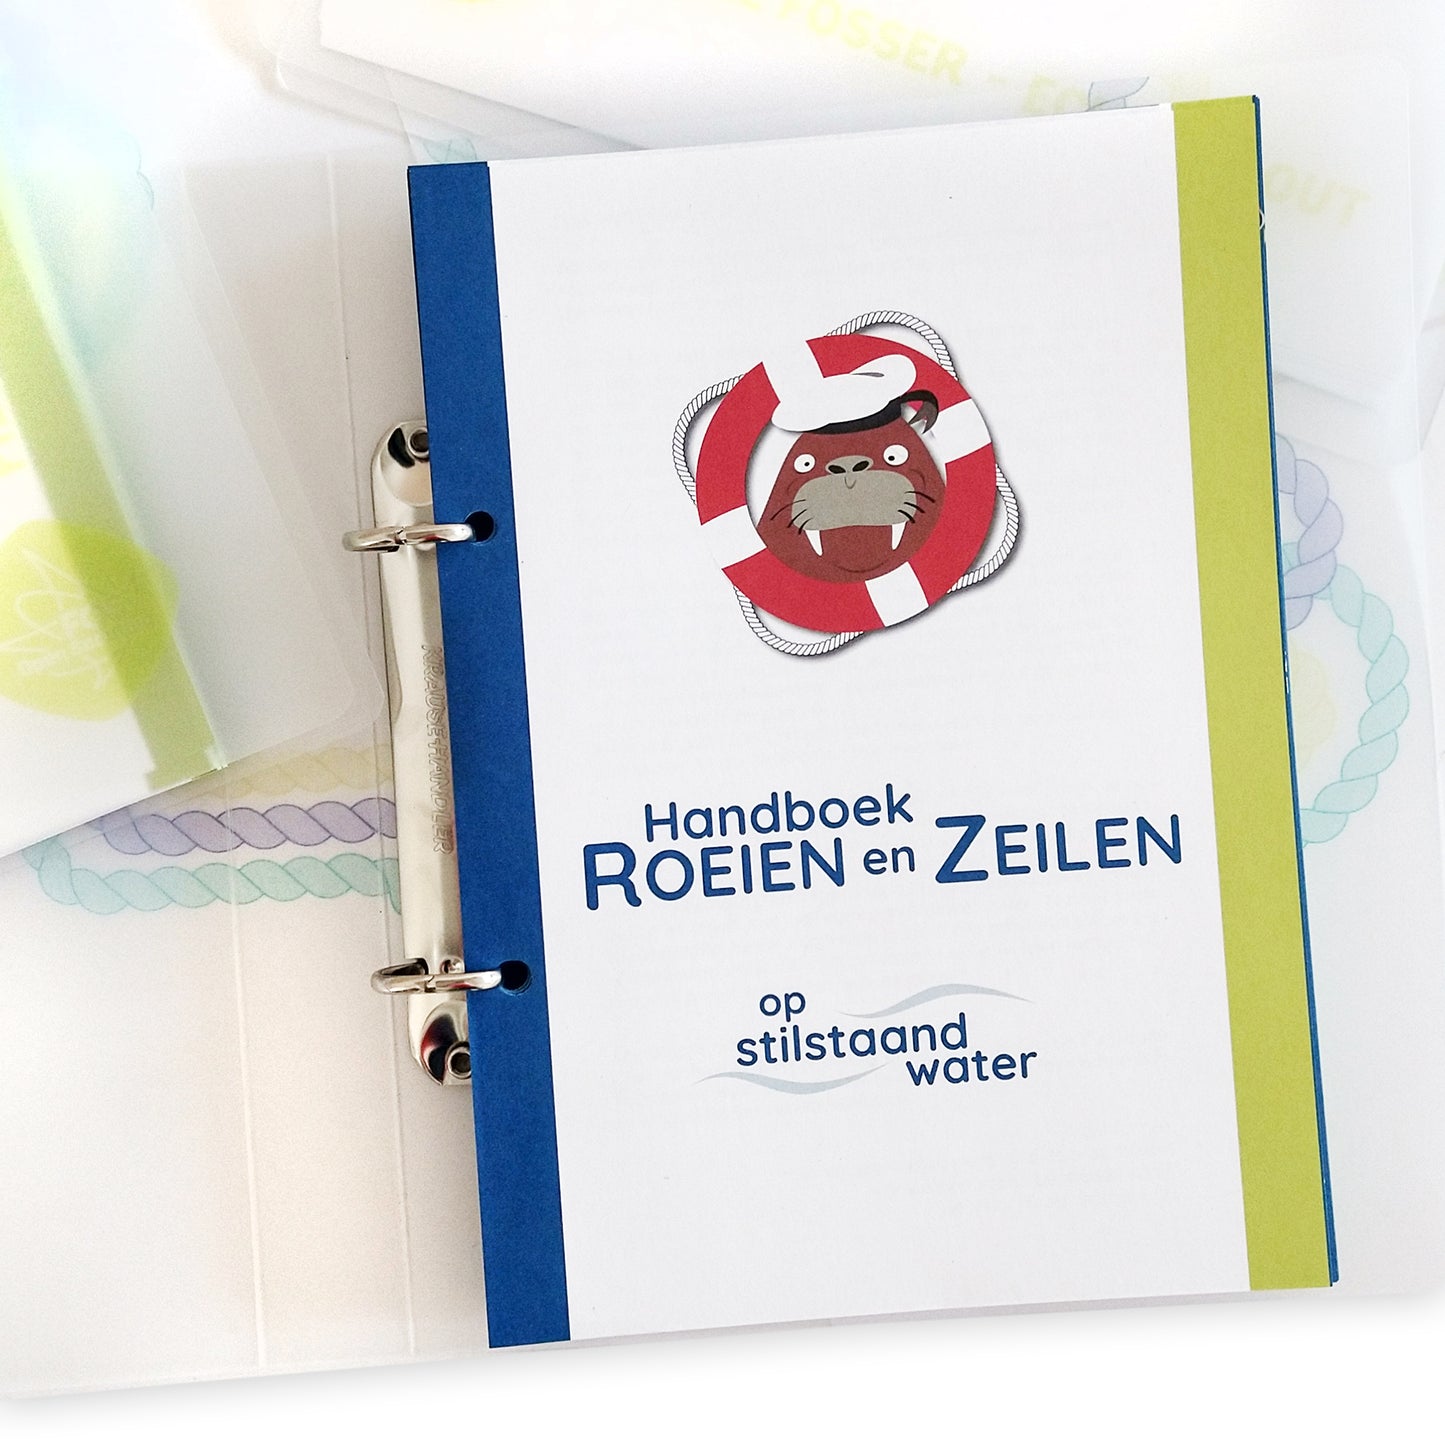 Handboek R&Z Stilstaand water in ringmapje